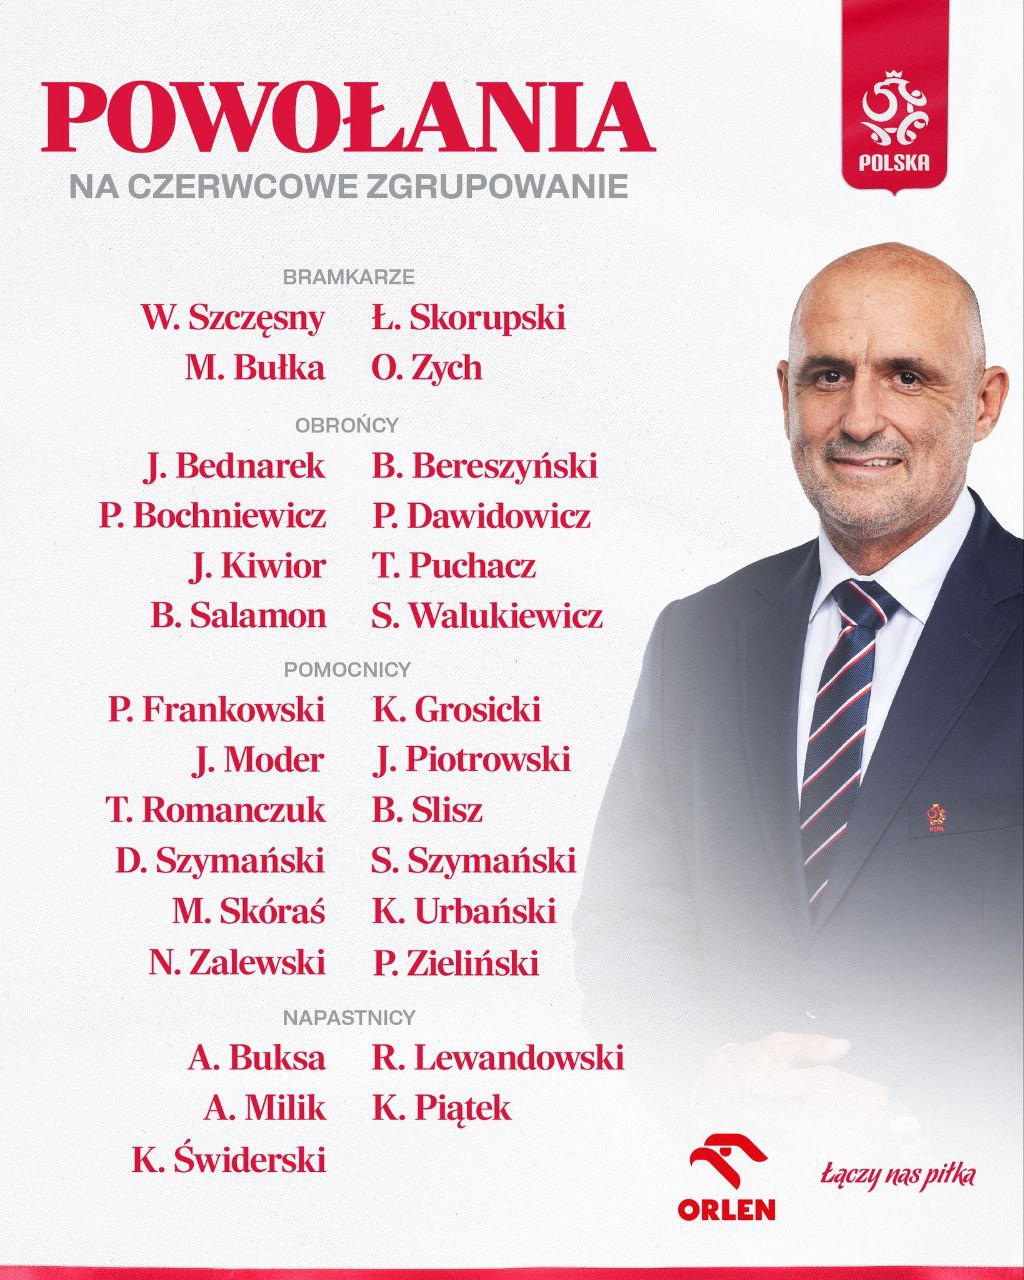 لیست تیم ملی لهستان